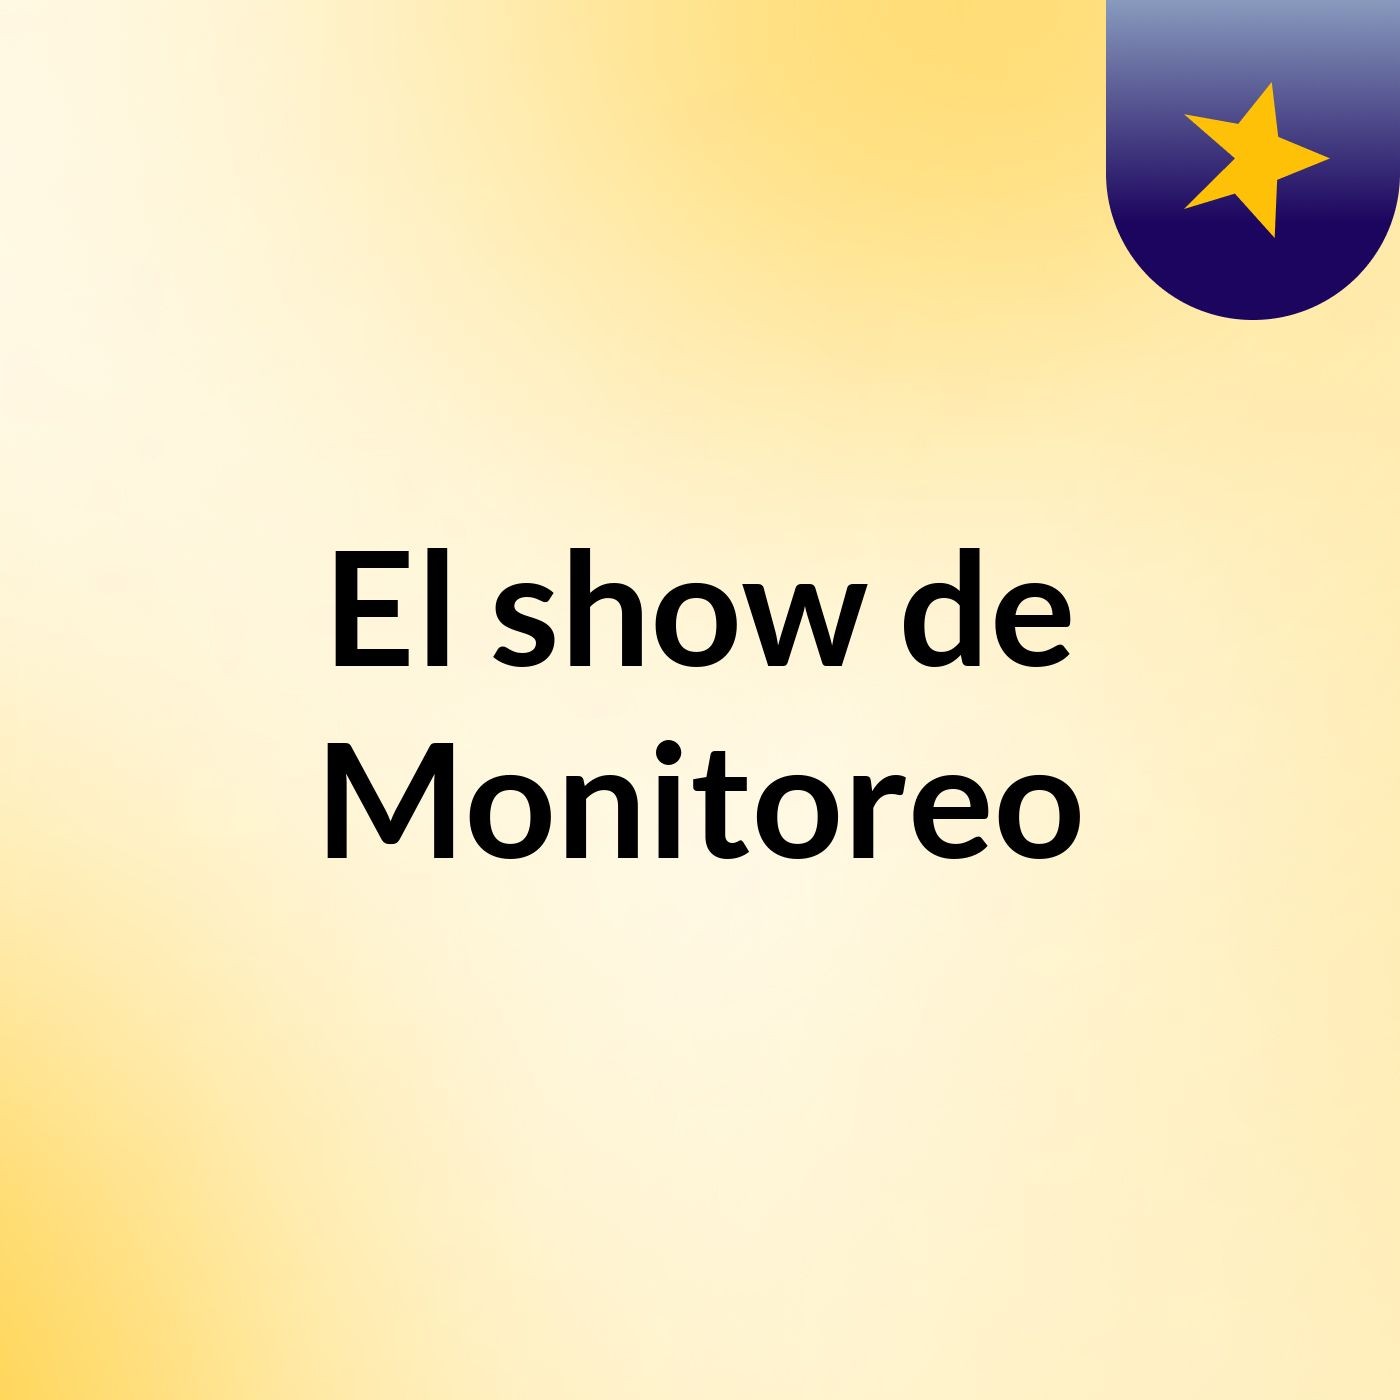 20-04-2017 Huangamarca se movilizará contra gestión Edy Benavides  - Radio Santa monica